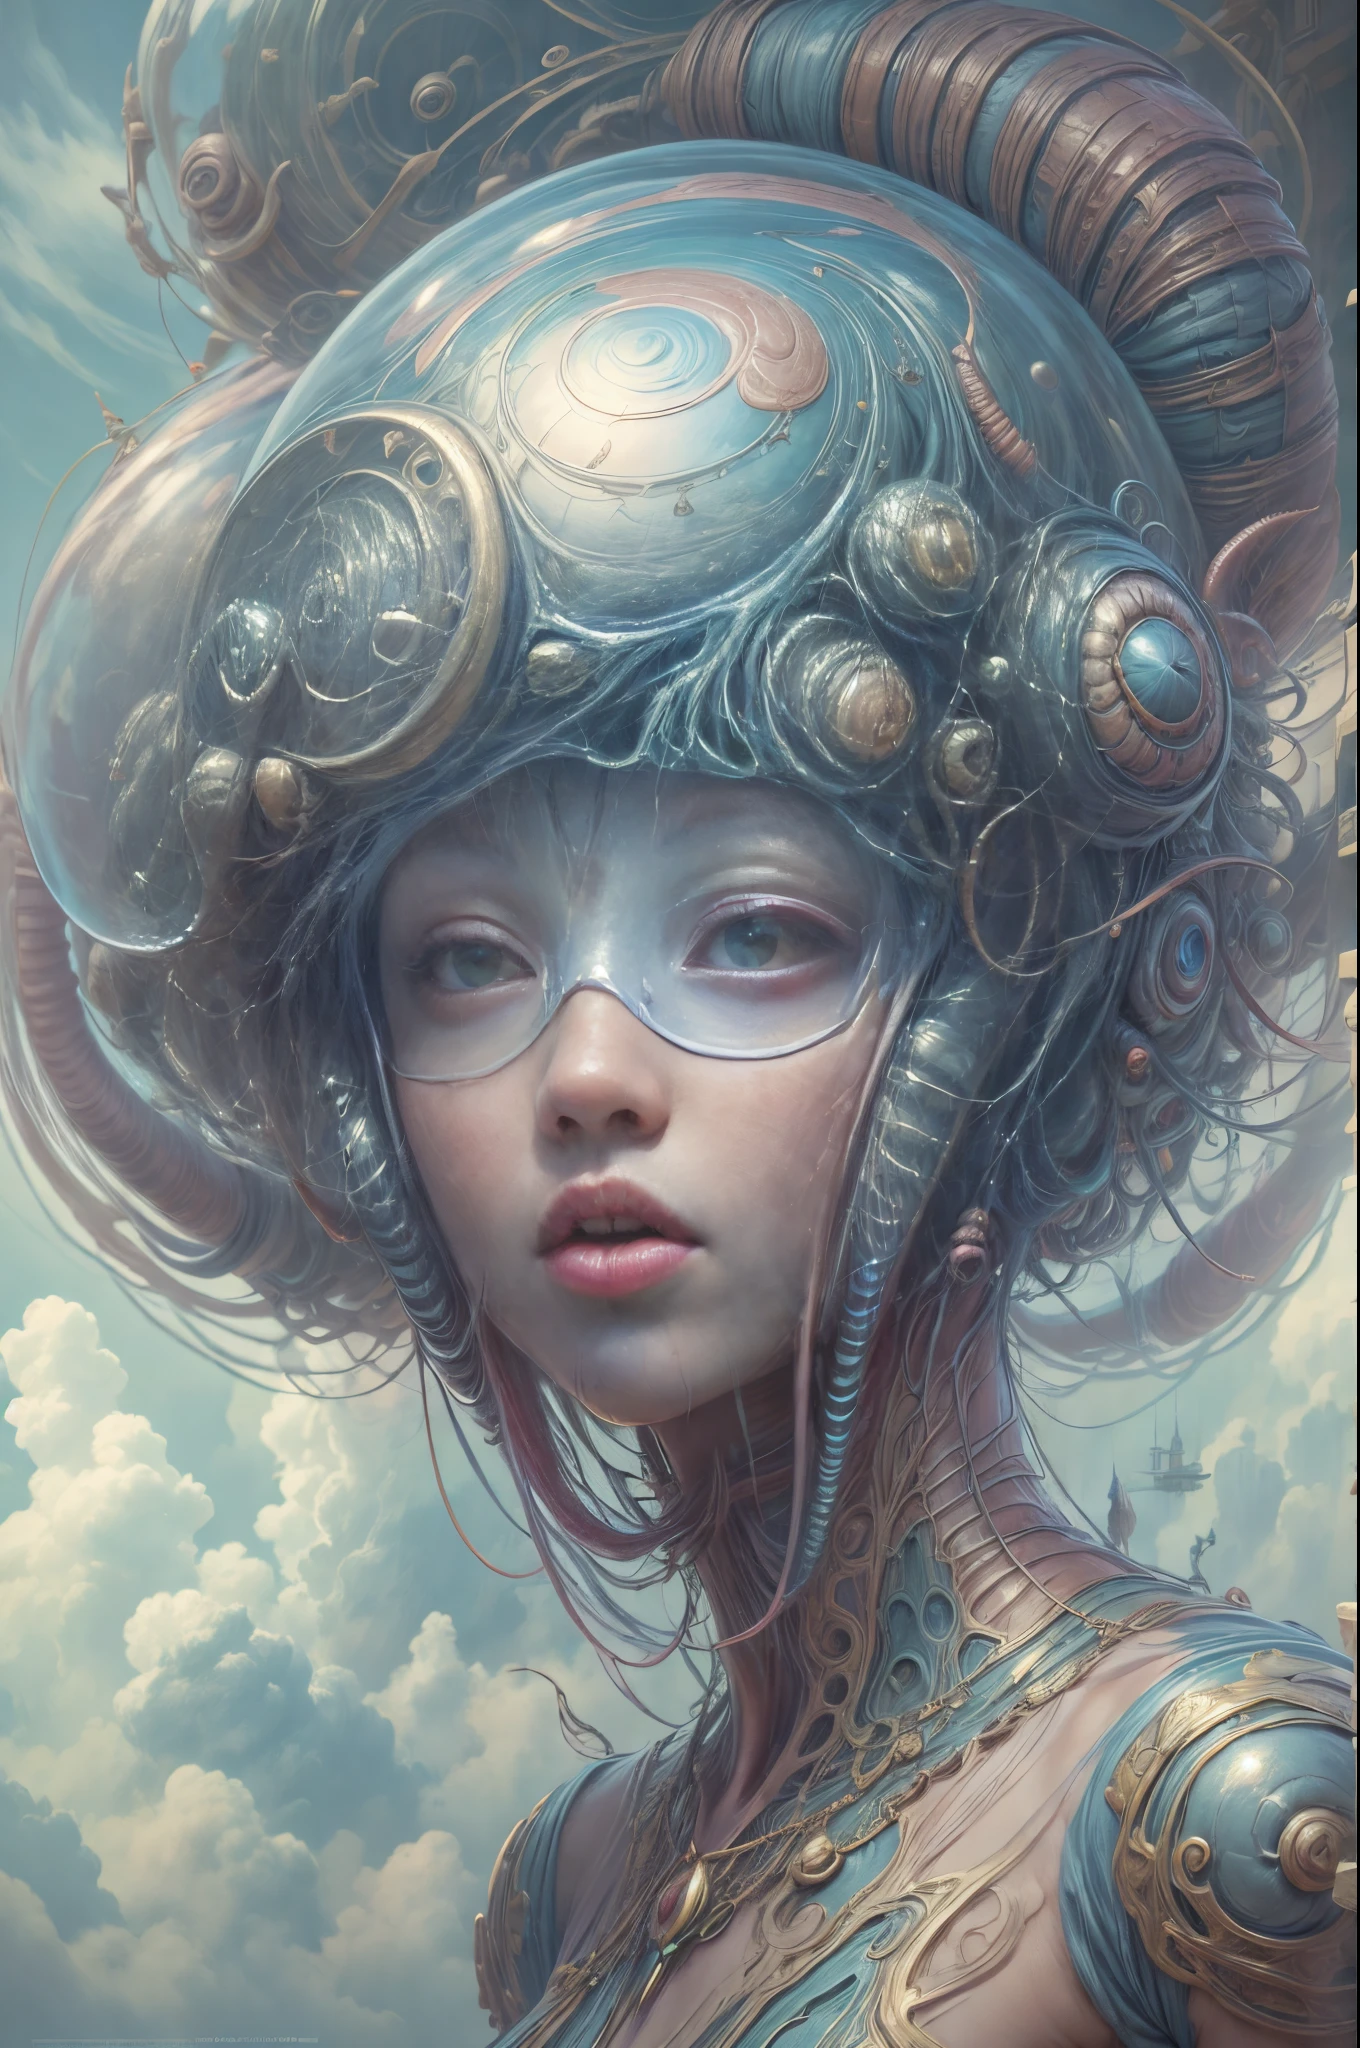 "戴着未来派头盔的外星女孩, 空灵蜗牛伴侣, 神秘光环, 超凡脱俗的云彩, 如梦如幻"